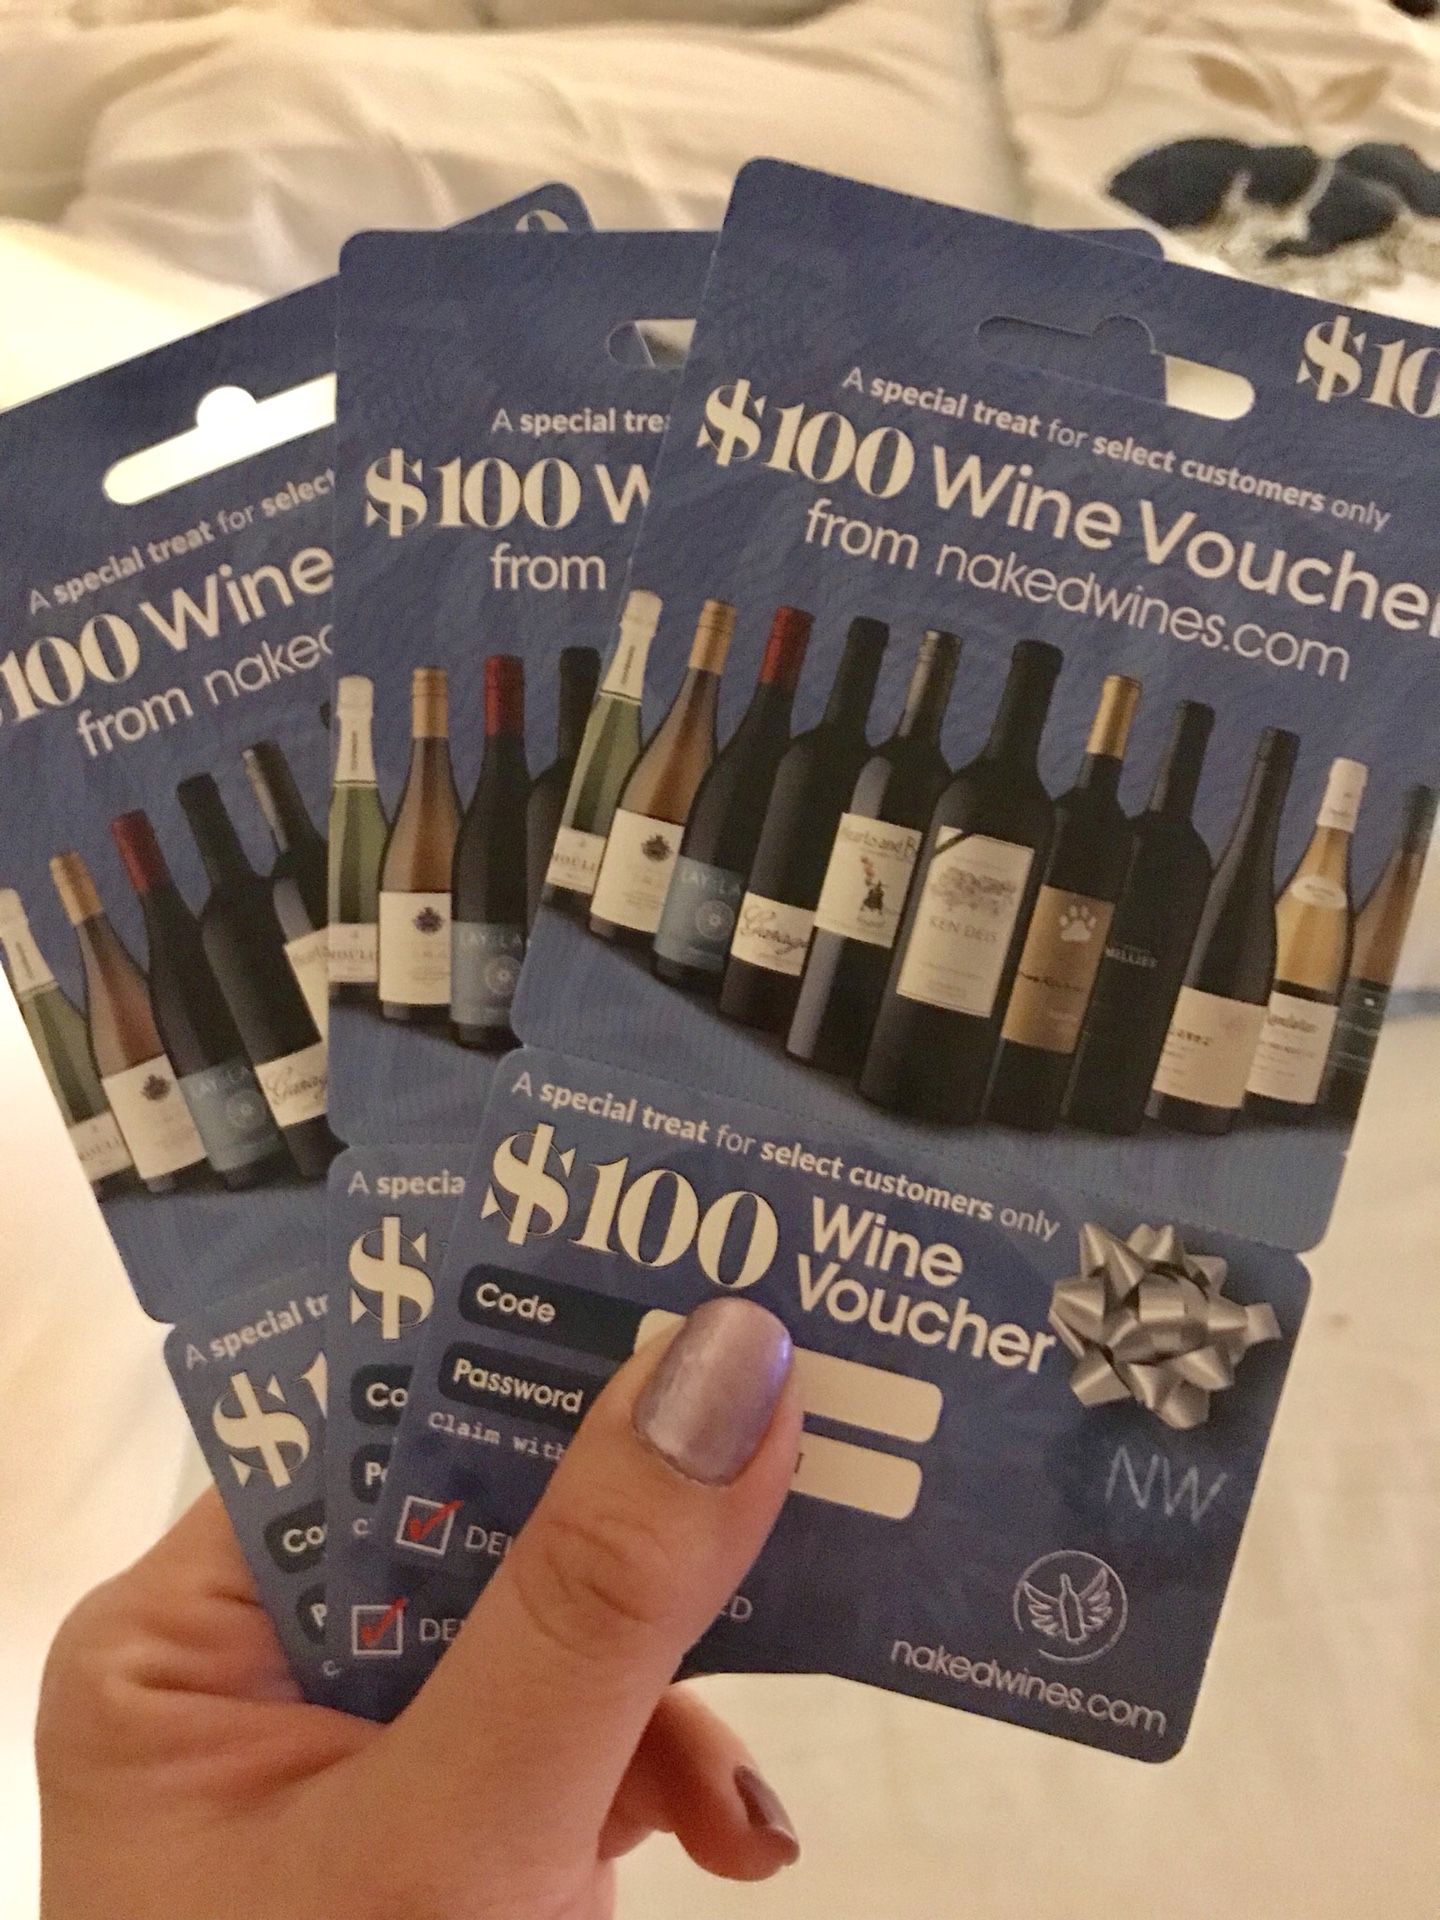 Wine voucher